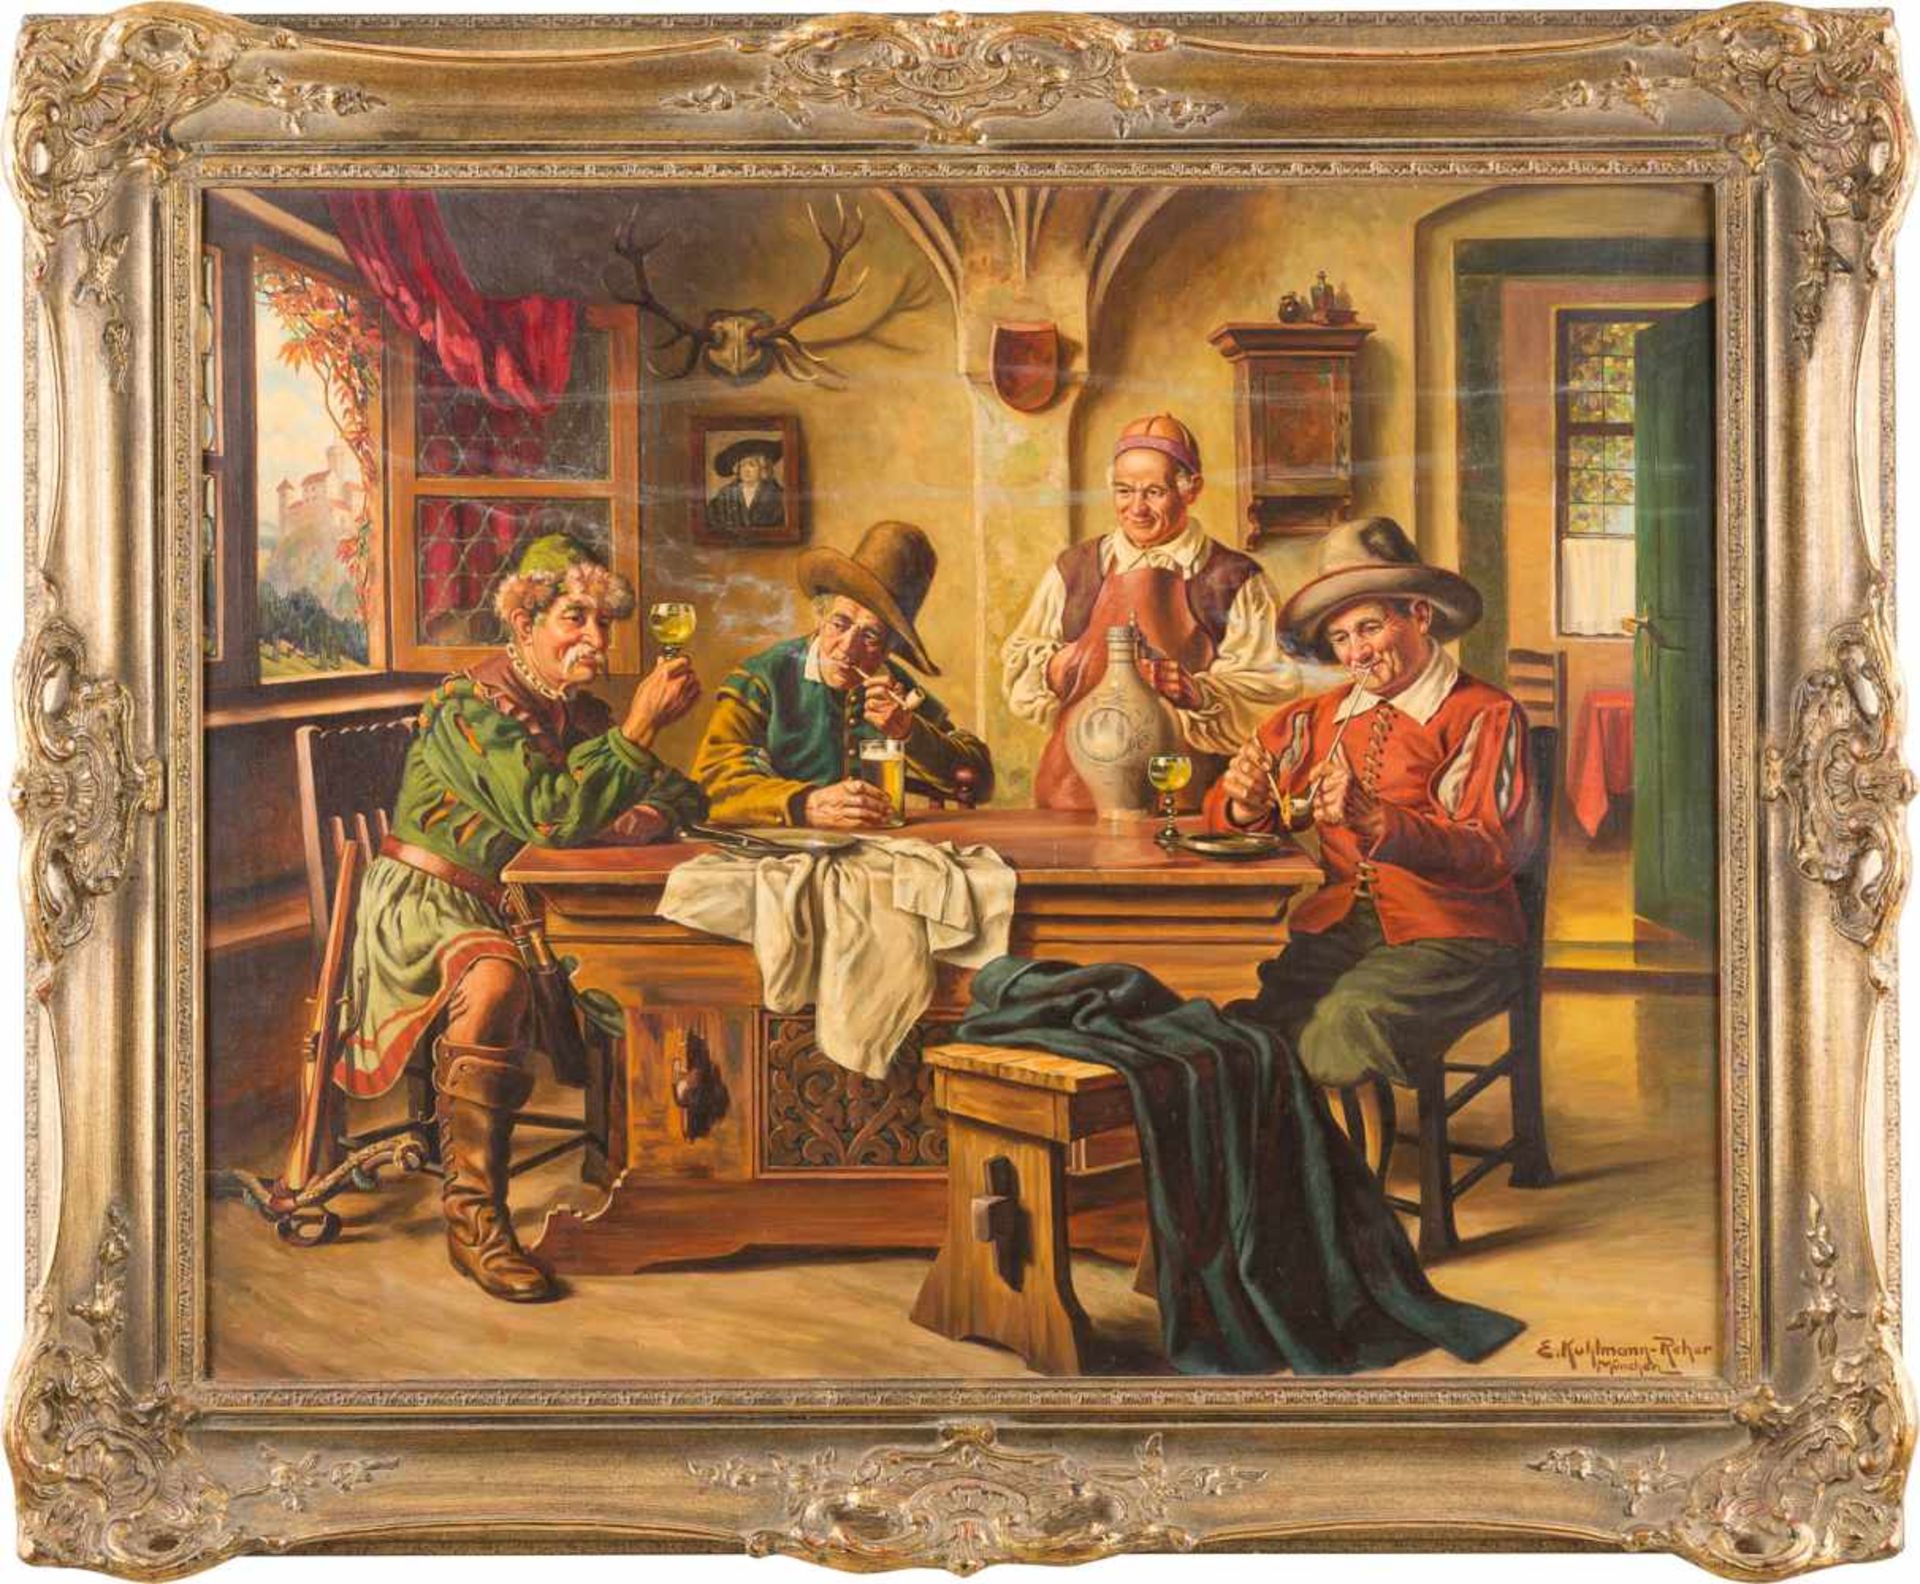 EMIL KUHLMANN REHER1886 Deutschland - 1957Die Weinprobe Öl auf Leinwand. 80,5 x 100 cm (R. 101,5 x - Bild 2 aus 2